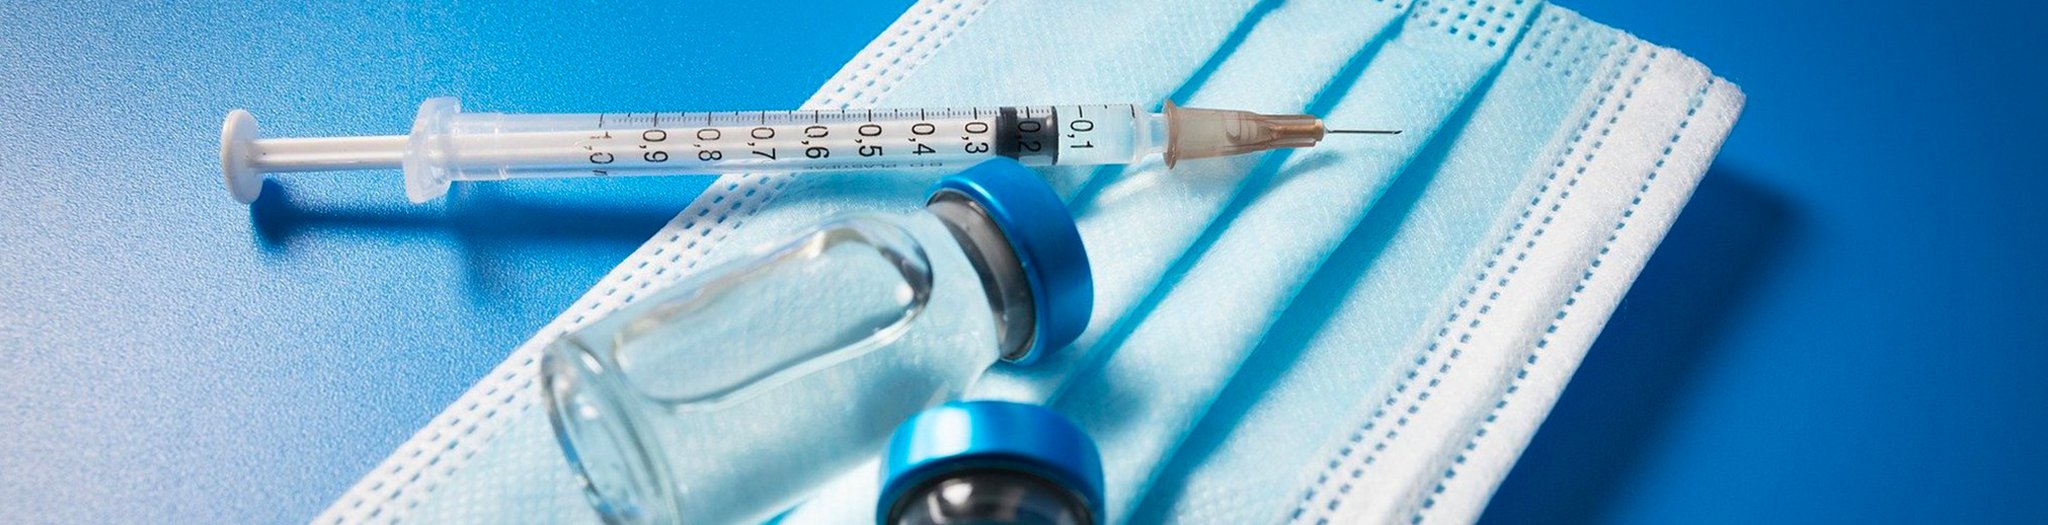 Das Bild zeigt eine Injektionsspritze und Impfdosen auf einer medizinischen Maske 